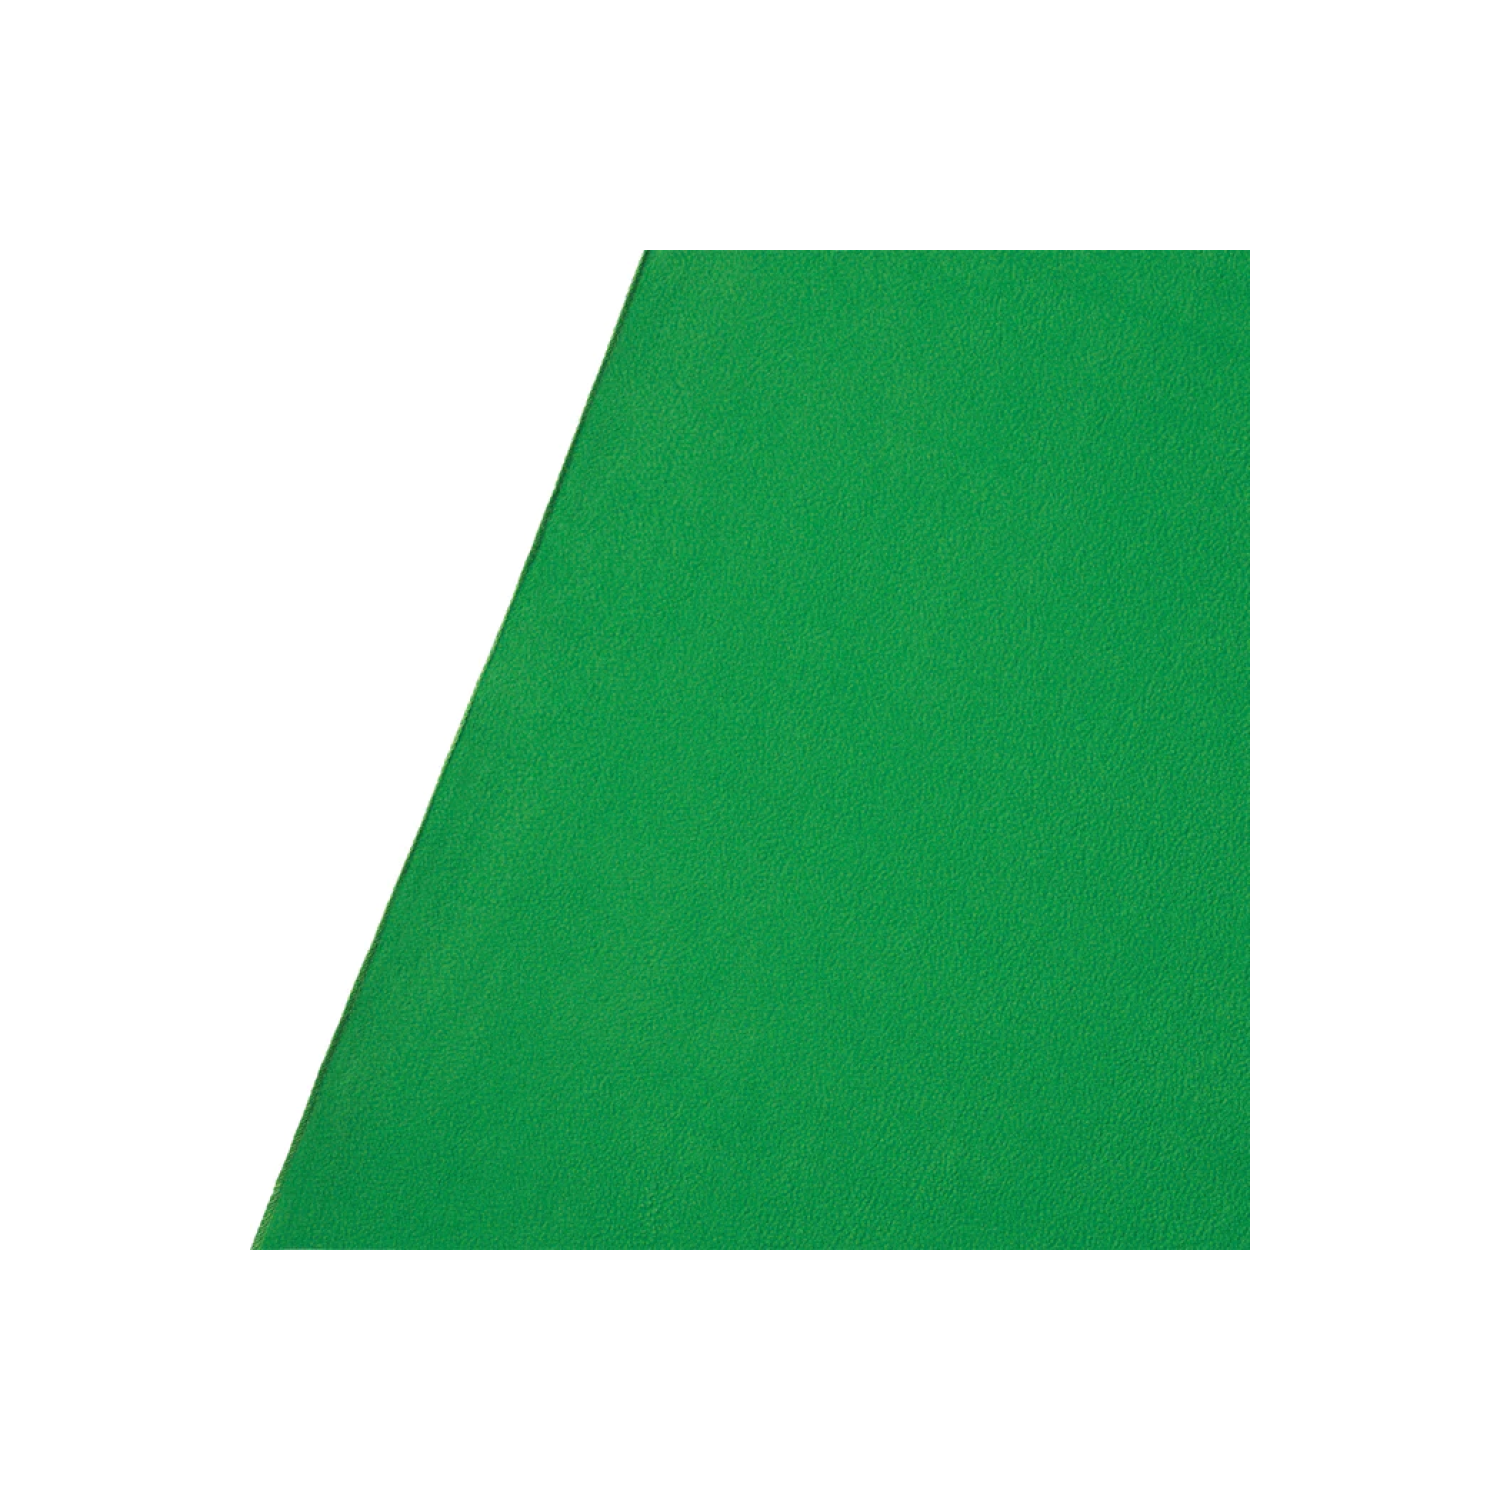 TEART DE RÉSISTANTS WESTCOTT - Green à clé chroma (9 'x 10')